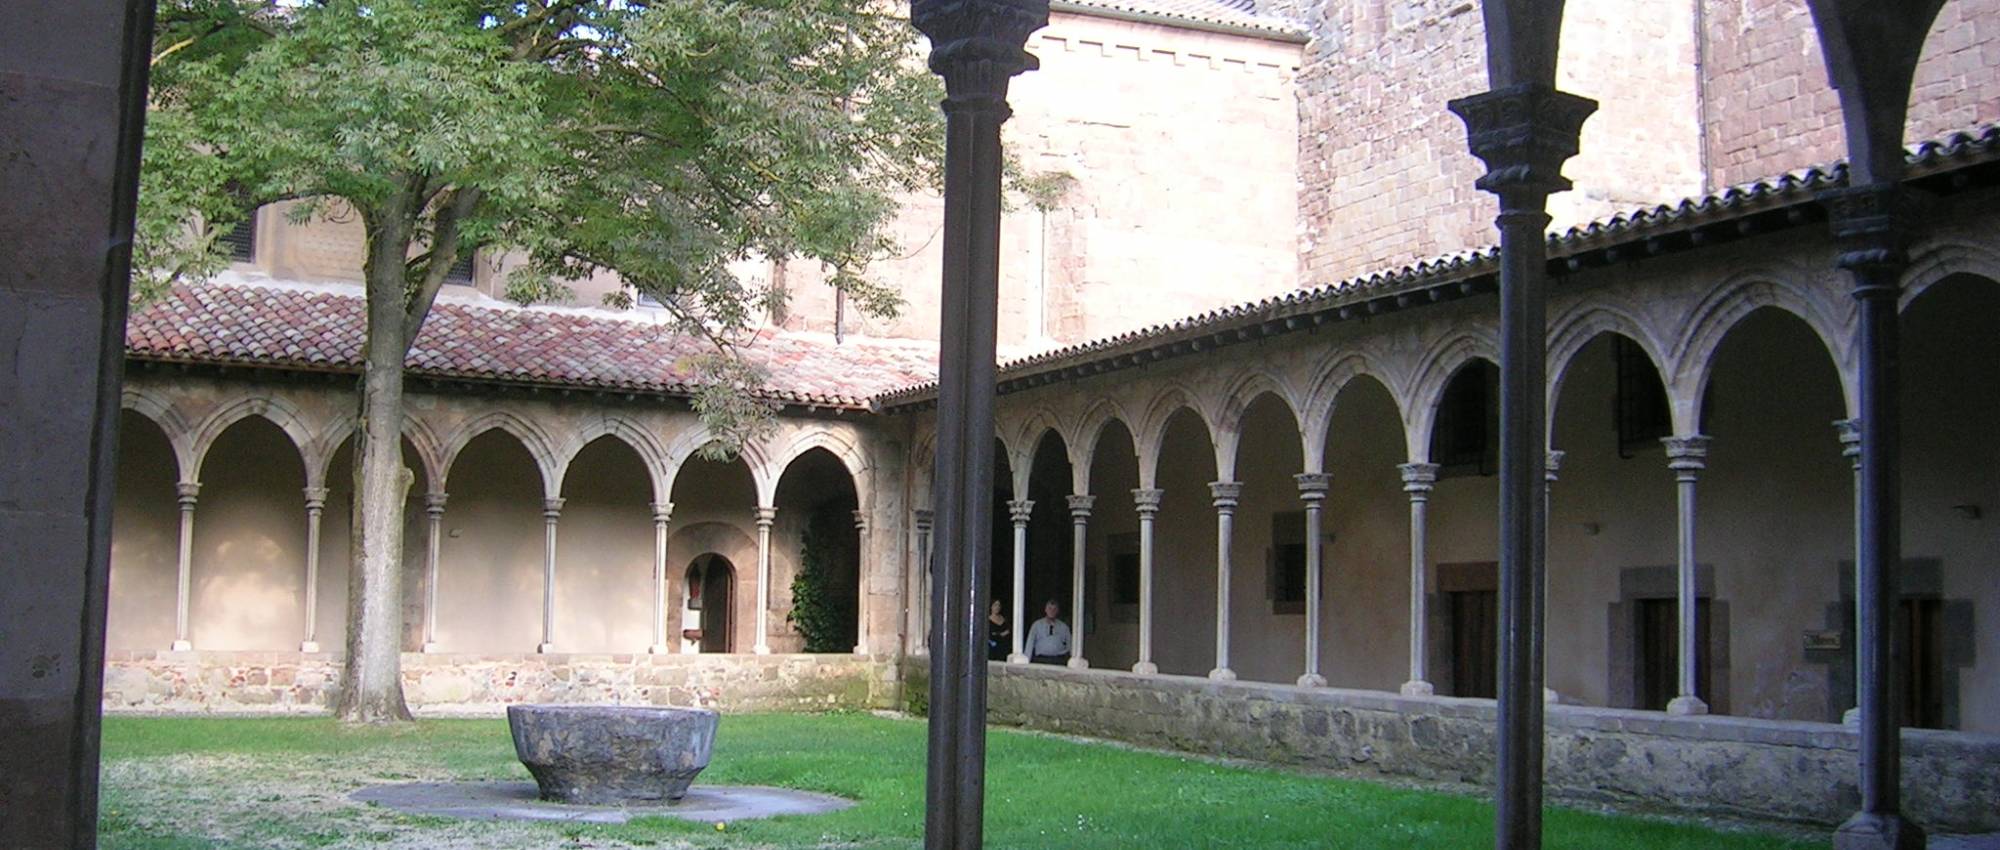 Monasterio de Joan les Abadesses | Cultural. de Cataluña.